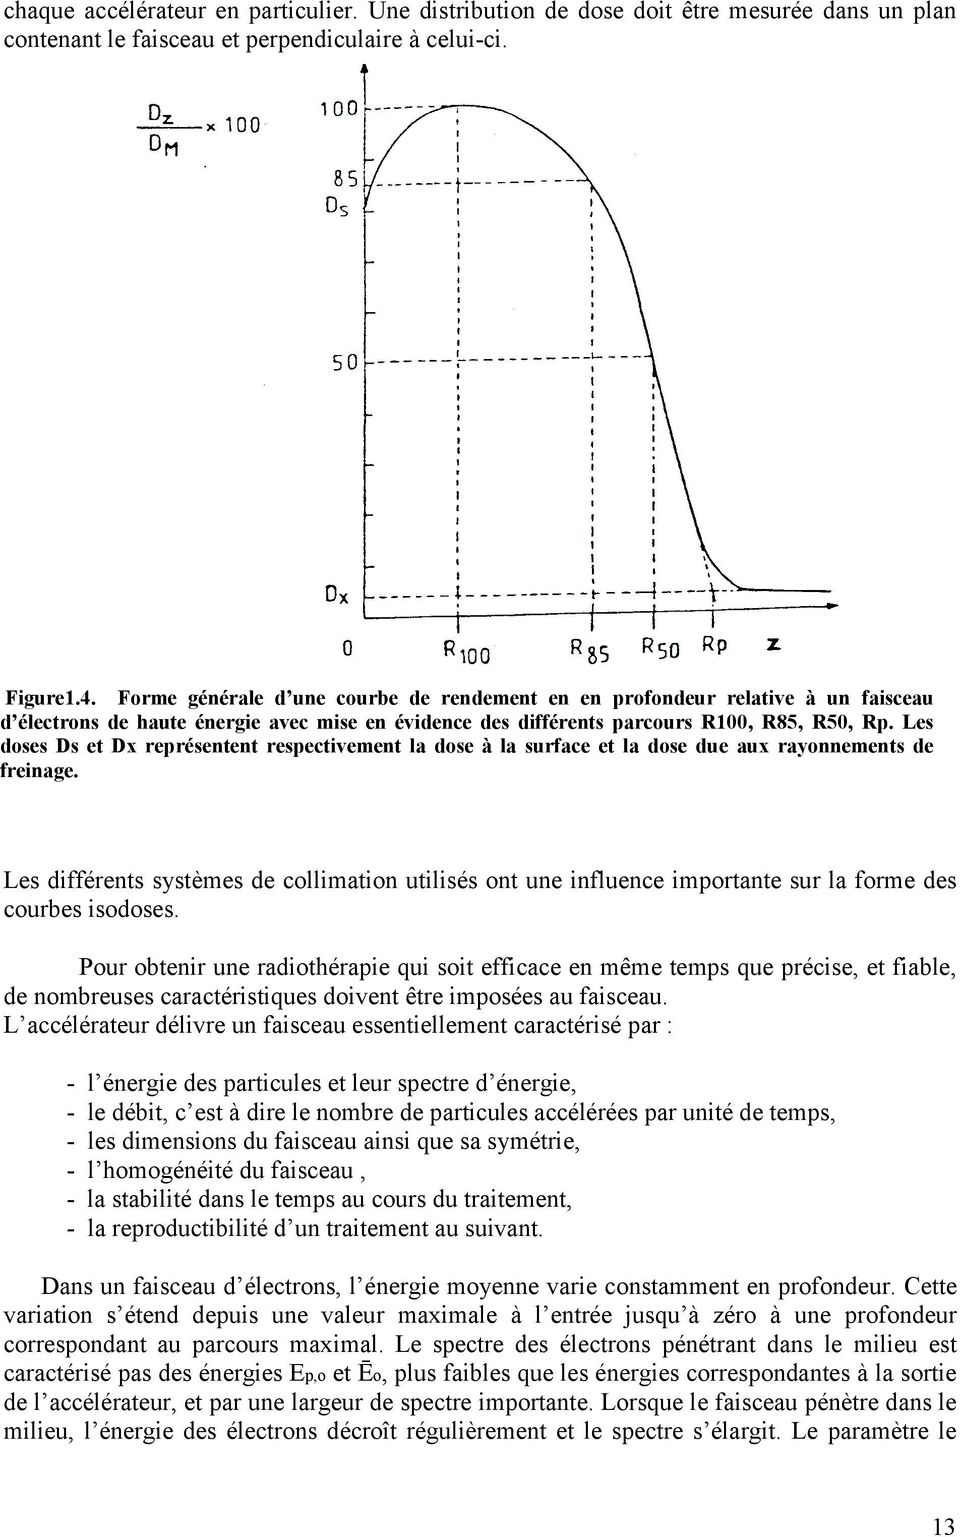 Les doses Ds et Dx représentent respectivement la dose à la surface et la dose due aux rayonnements de freinage.